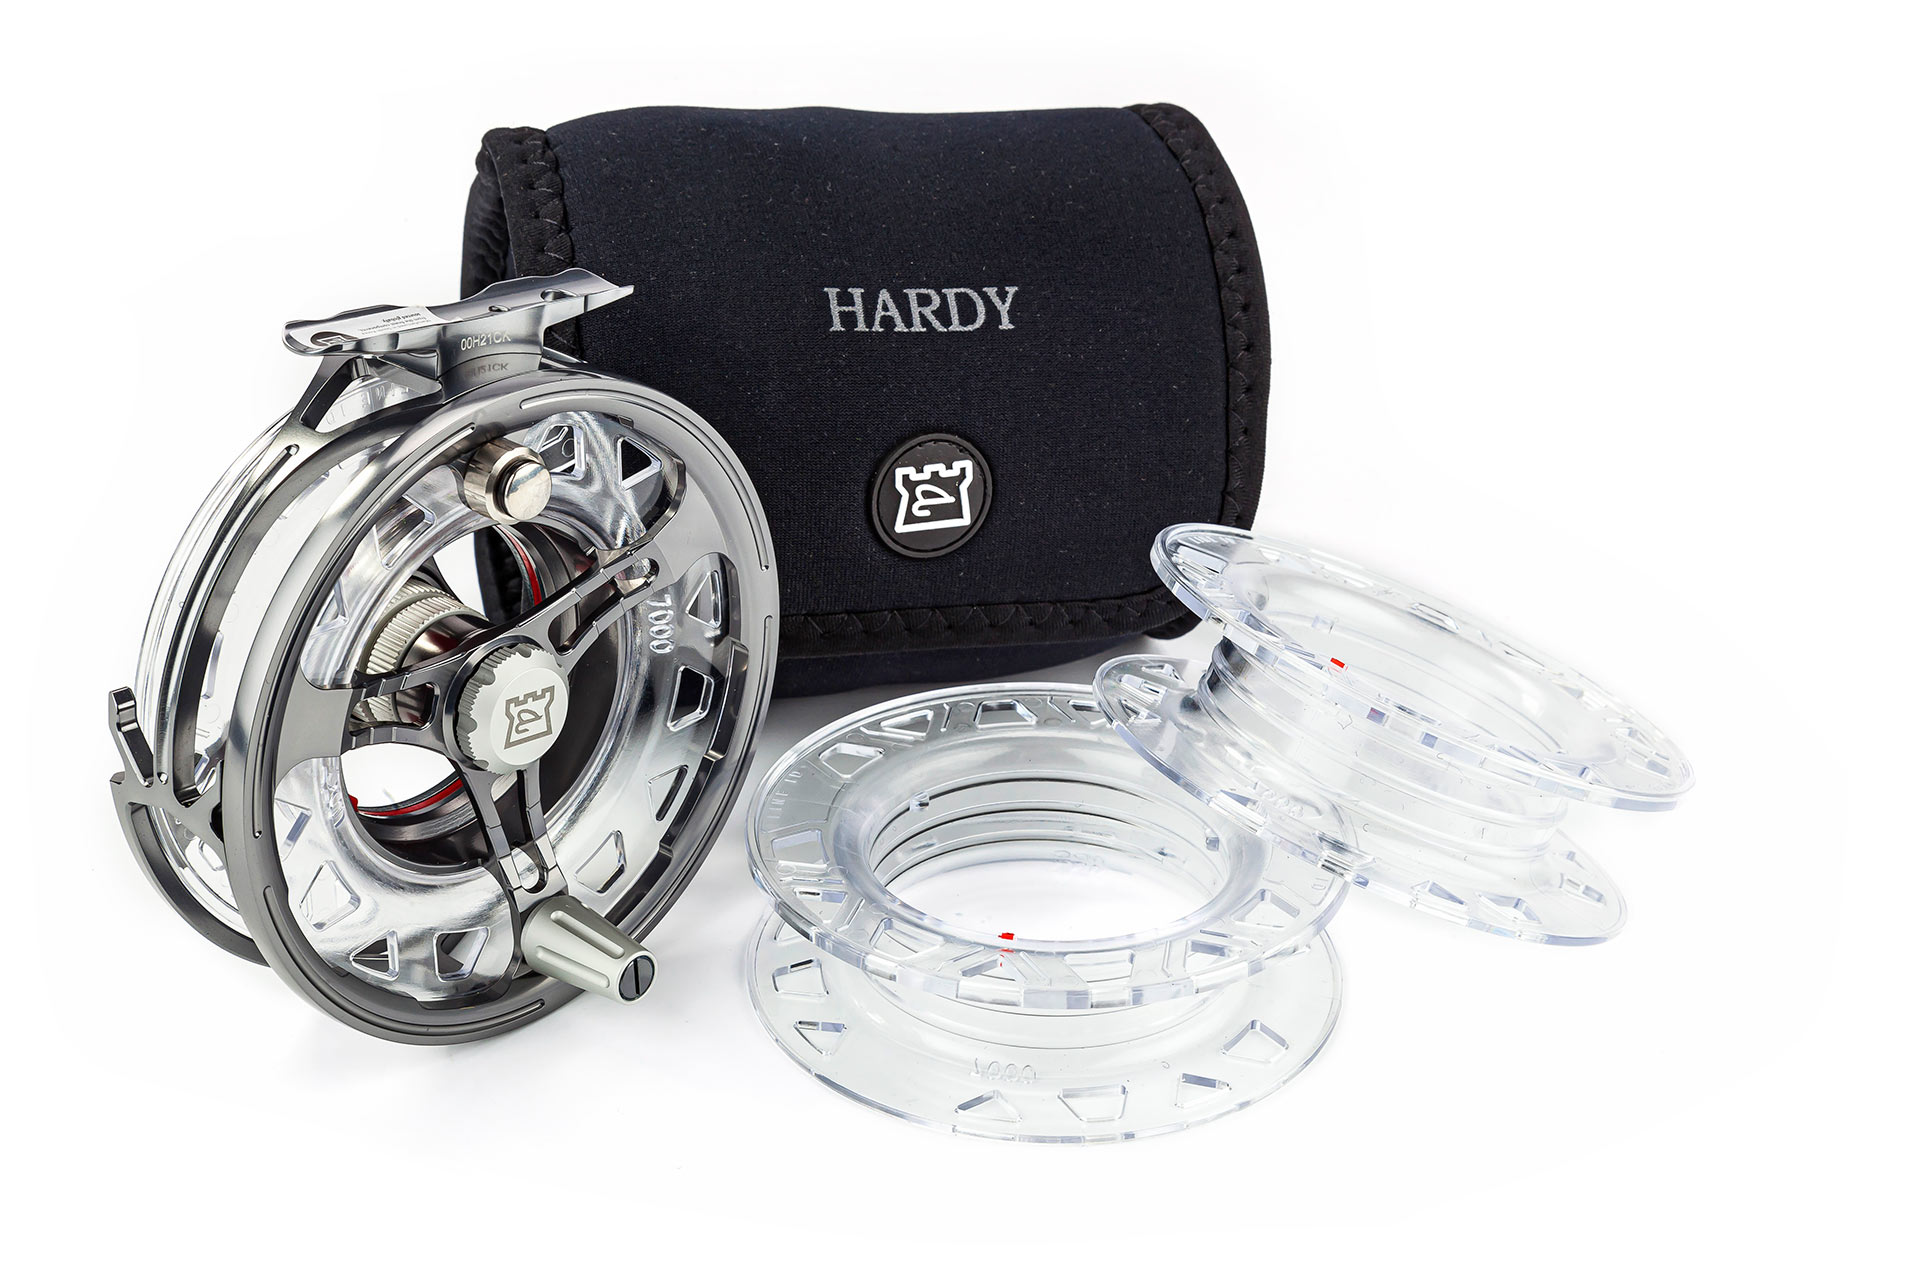 Hardy Ultradisc Cassette Fly Reel - Hardy Fishing US